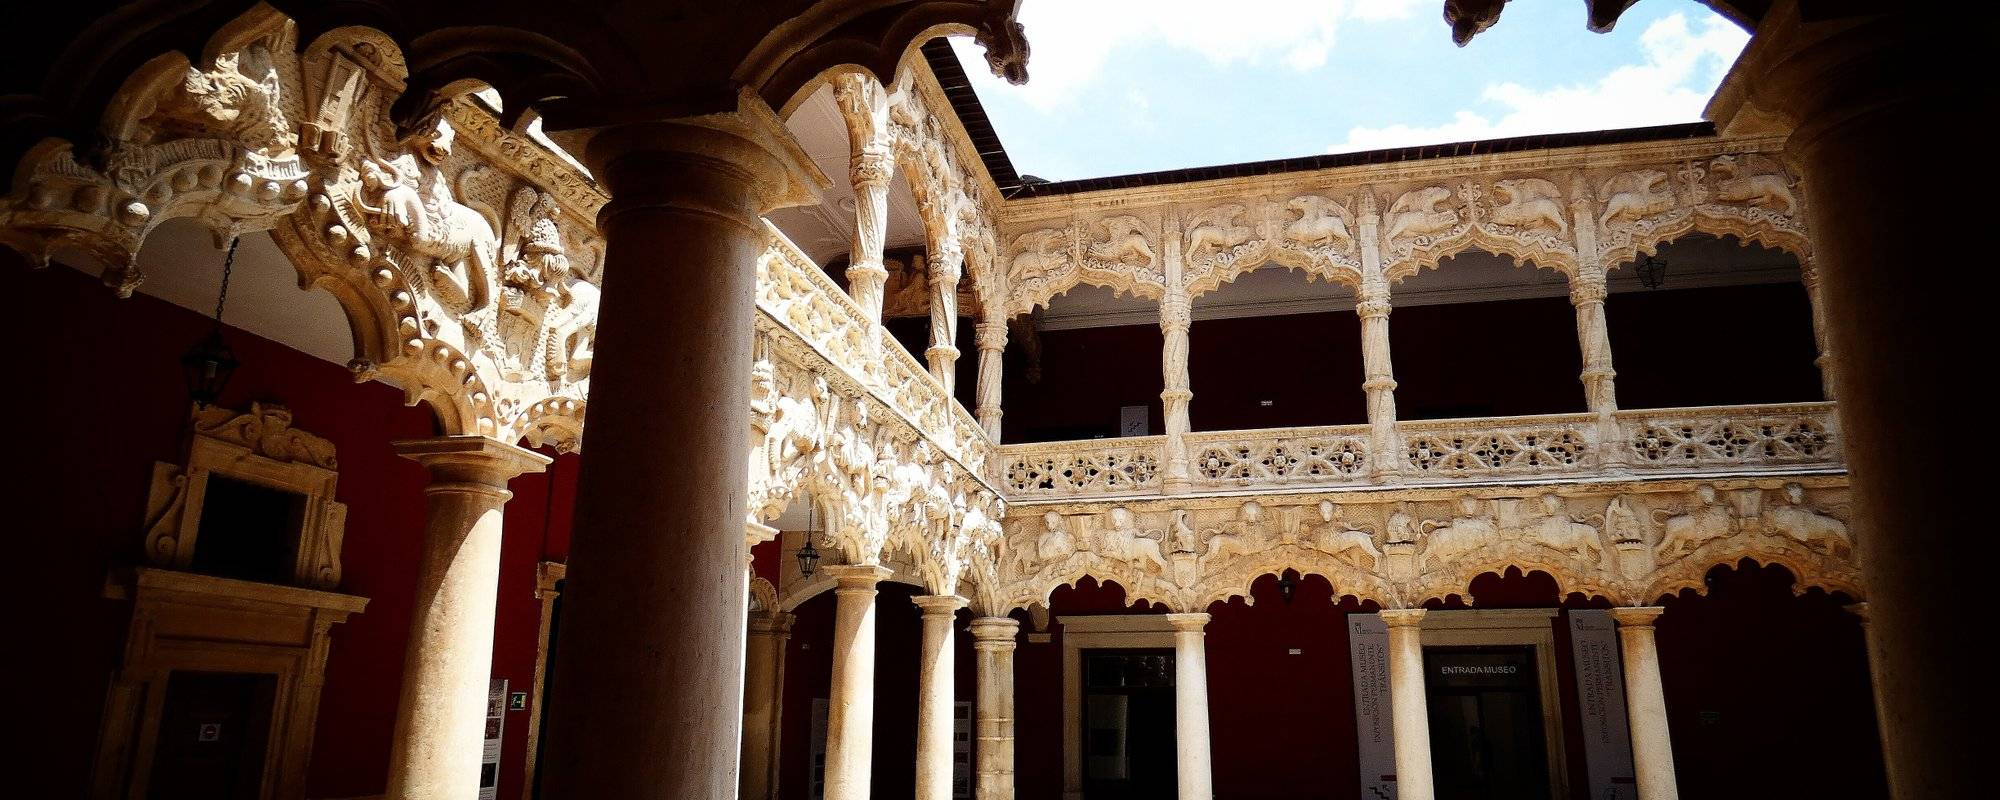 Guadalajara, Spain: daydreams with the Palacio del Infantado